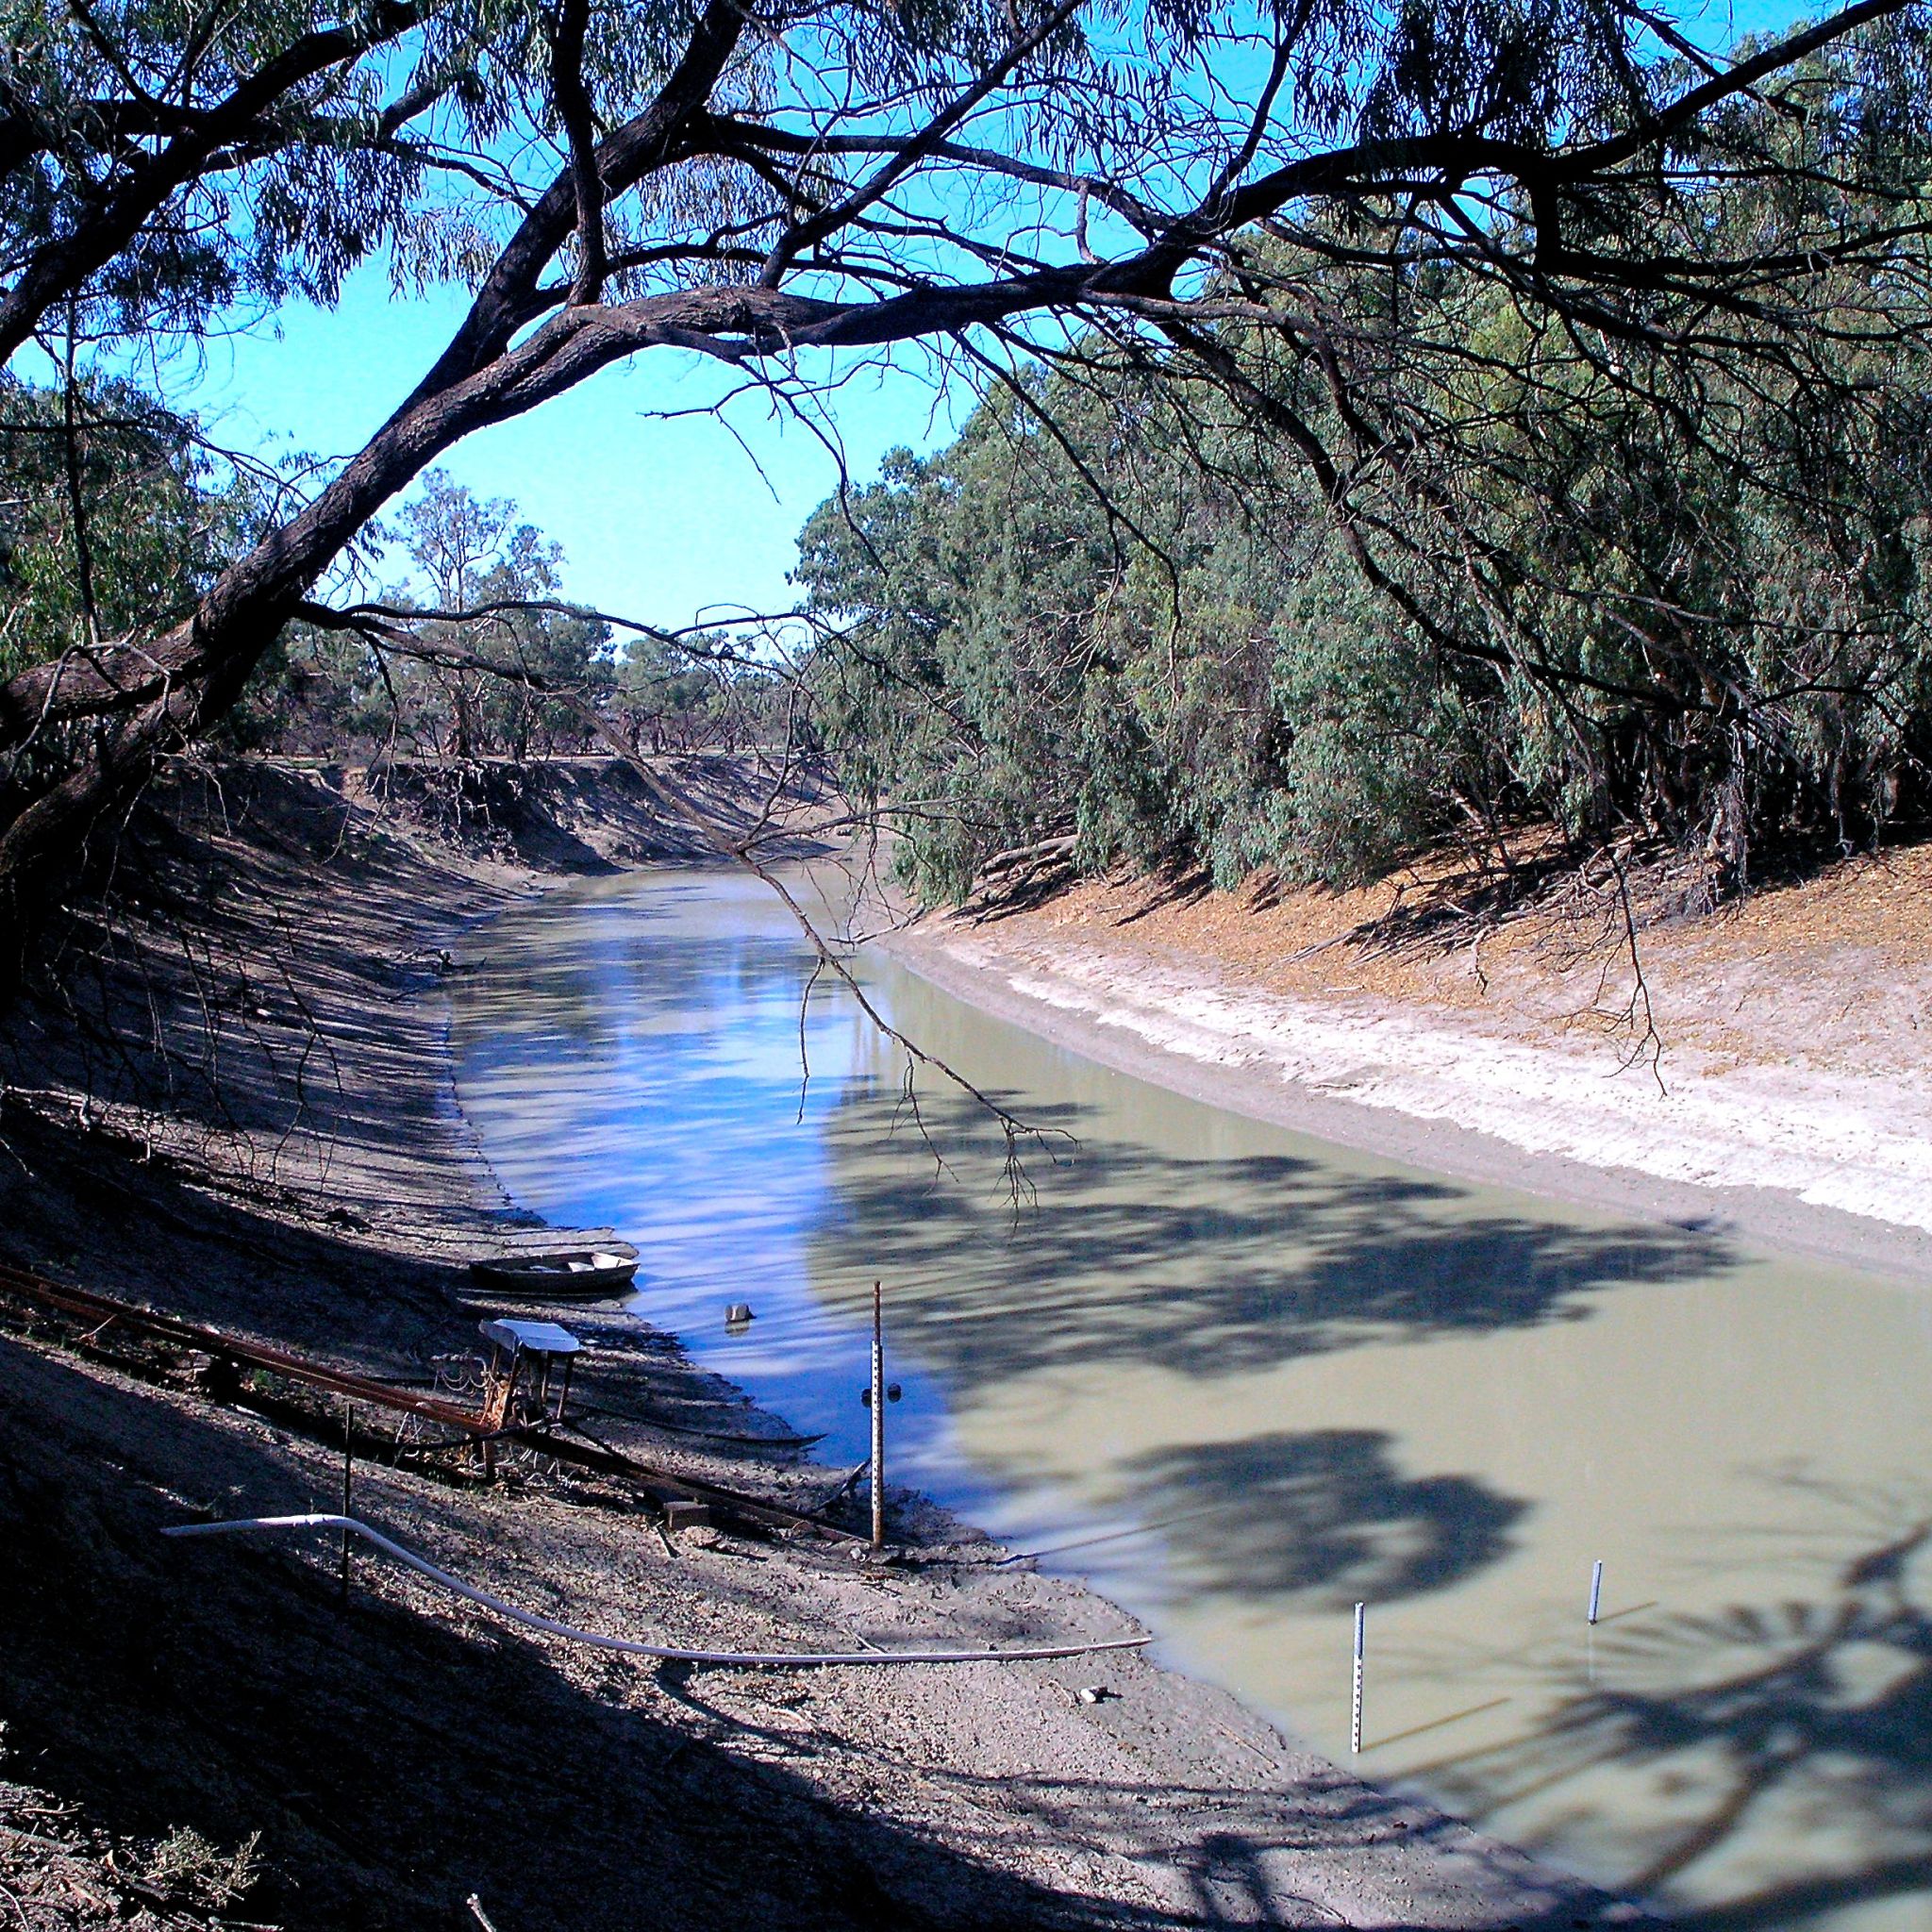 Австралия направление рек. Река Дарлинu Австралии. Река Дарлинг в Австралии. Река Купер крик в Австралии. Реки: Муррей, Дарлинг, Купер-крик..